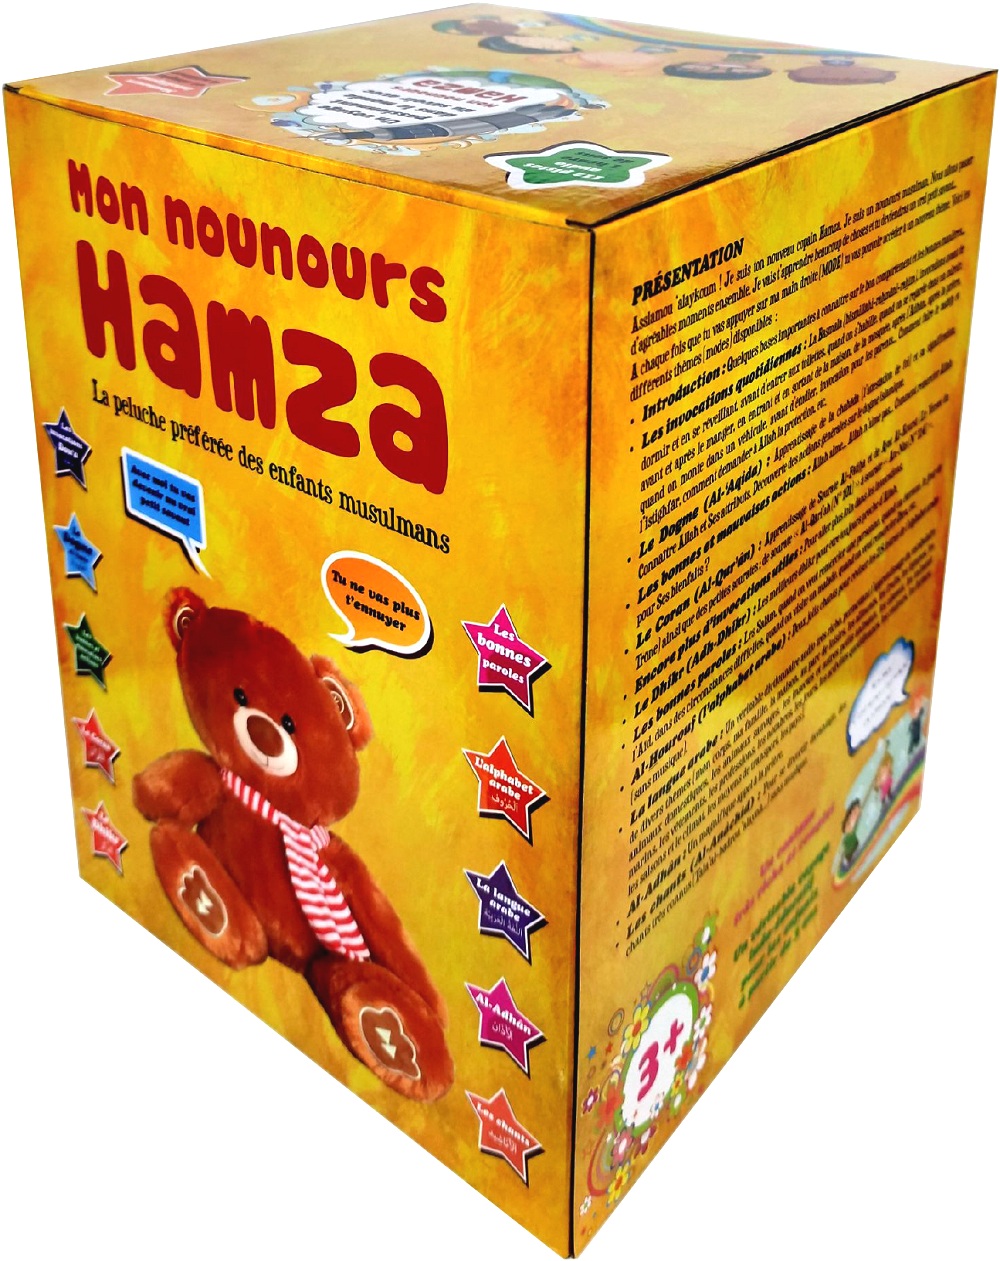 Mon Nounours Hamza (Marron) : La peluche préférée des enfants